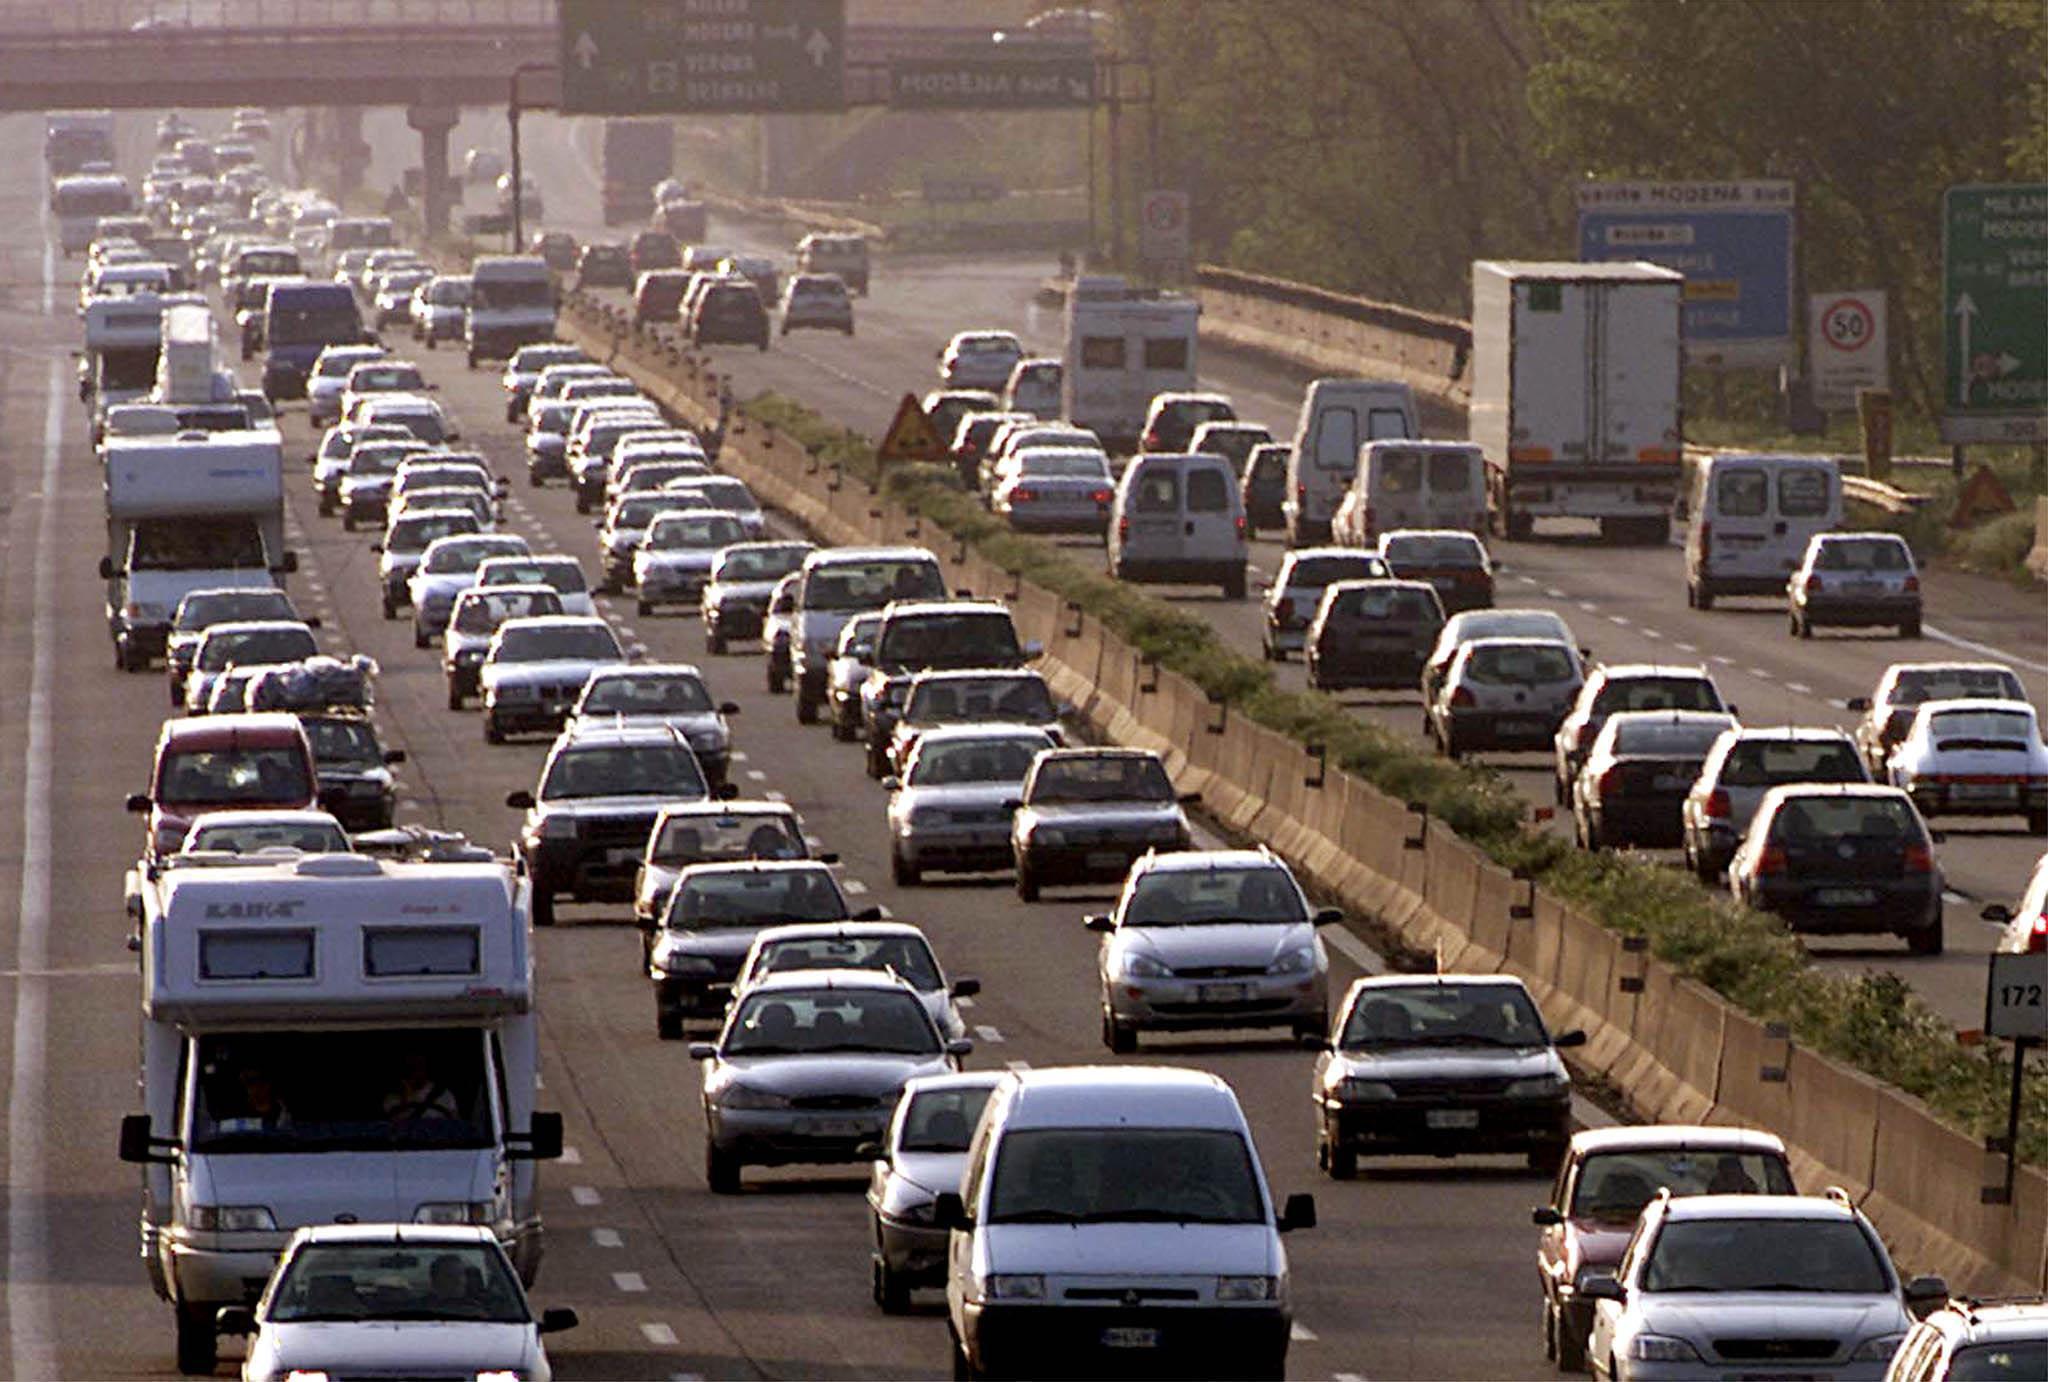 Quanto consuma auto diesel in autostradaQuanto consuma auto diesel in autostrada